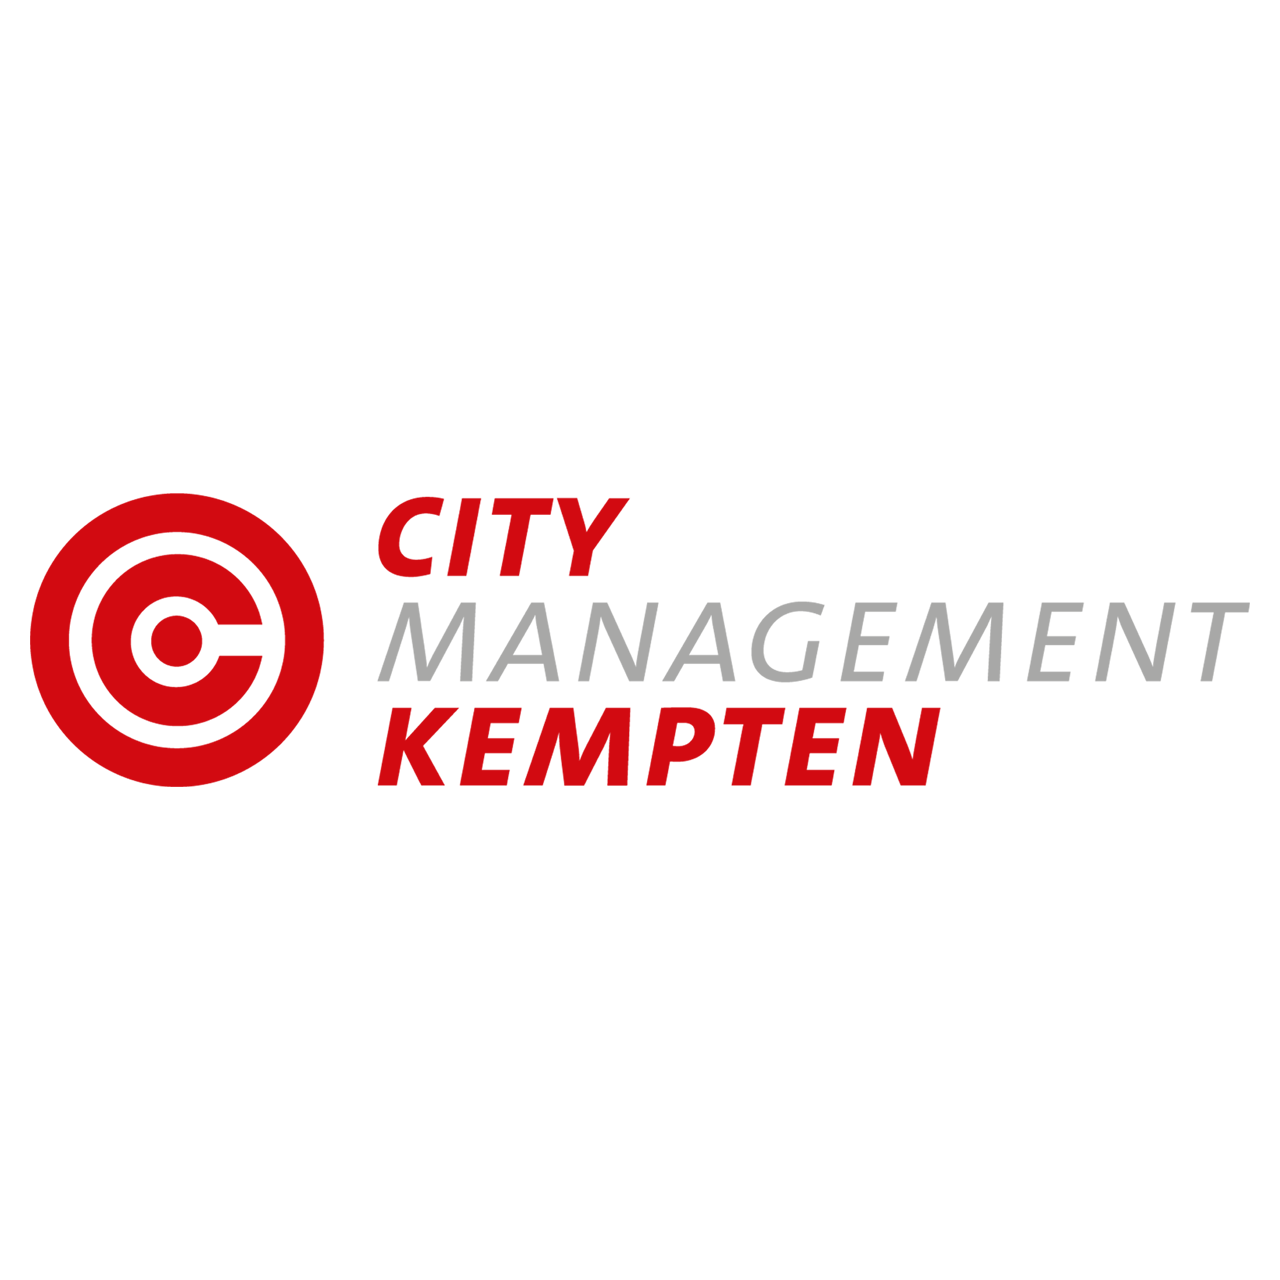 City Management Kempten